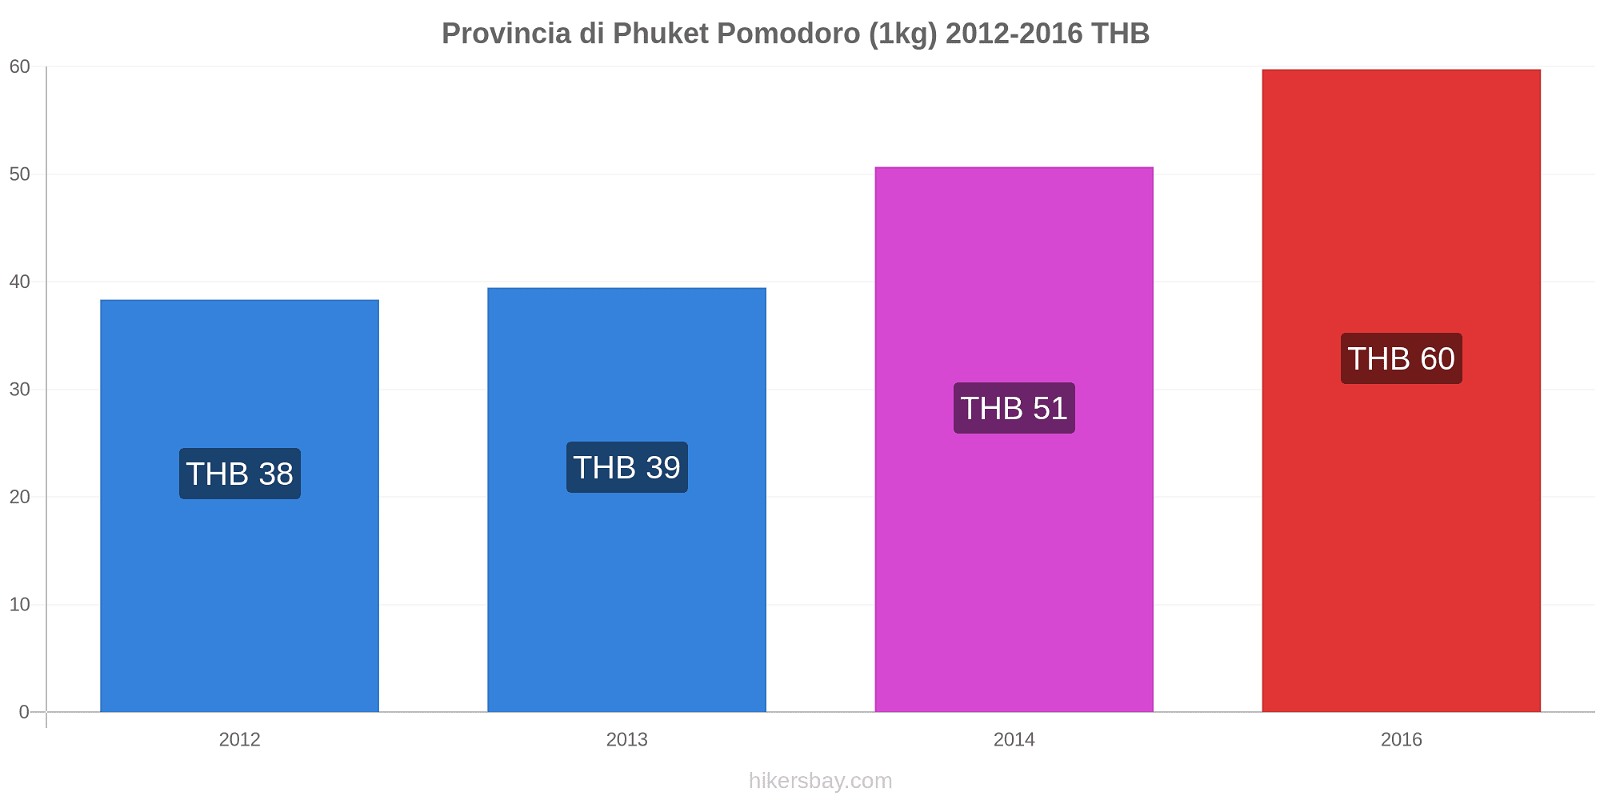 Provincia di Phuket variazioni di prezzo Pomodoro (1kg) hikersbay.com